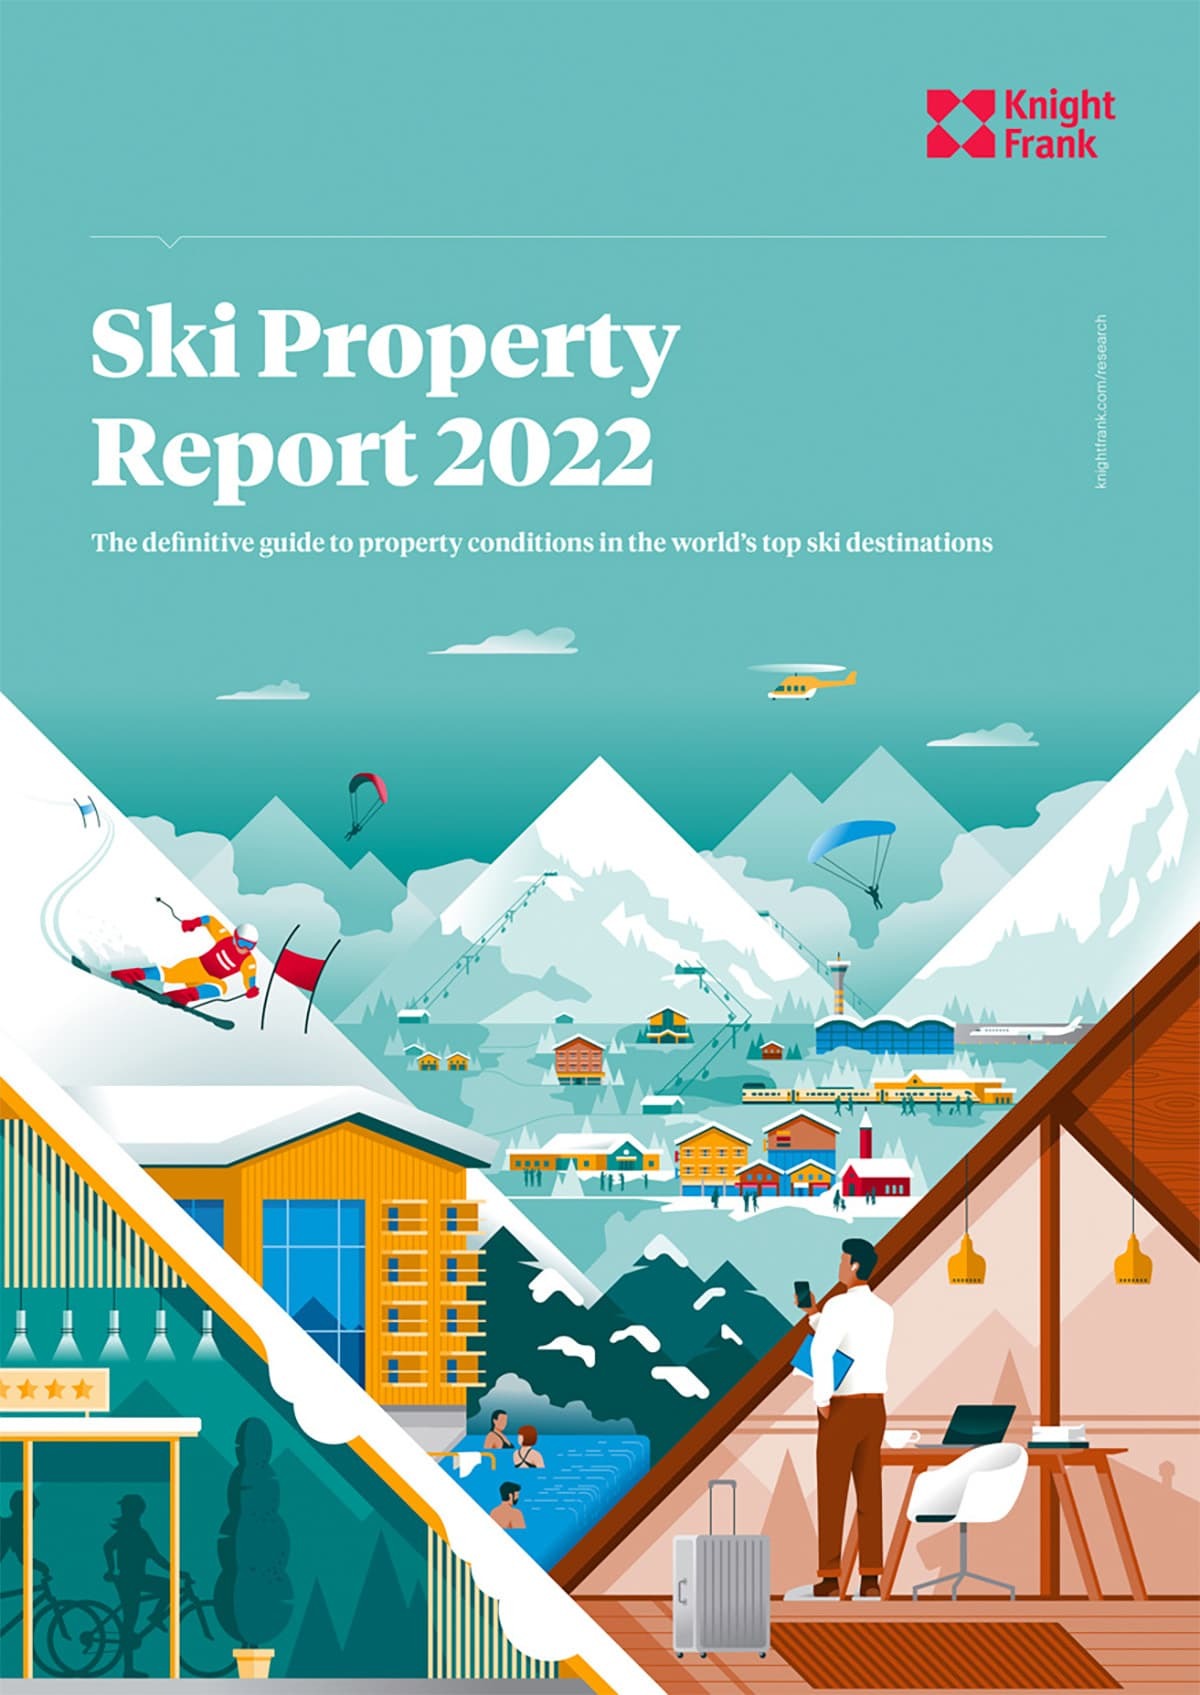 Ski property Report 2022